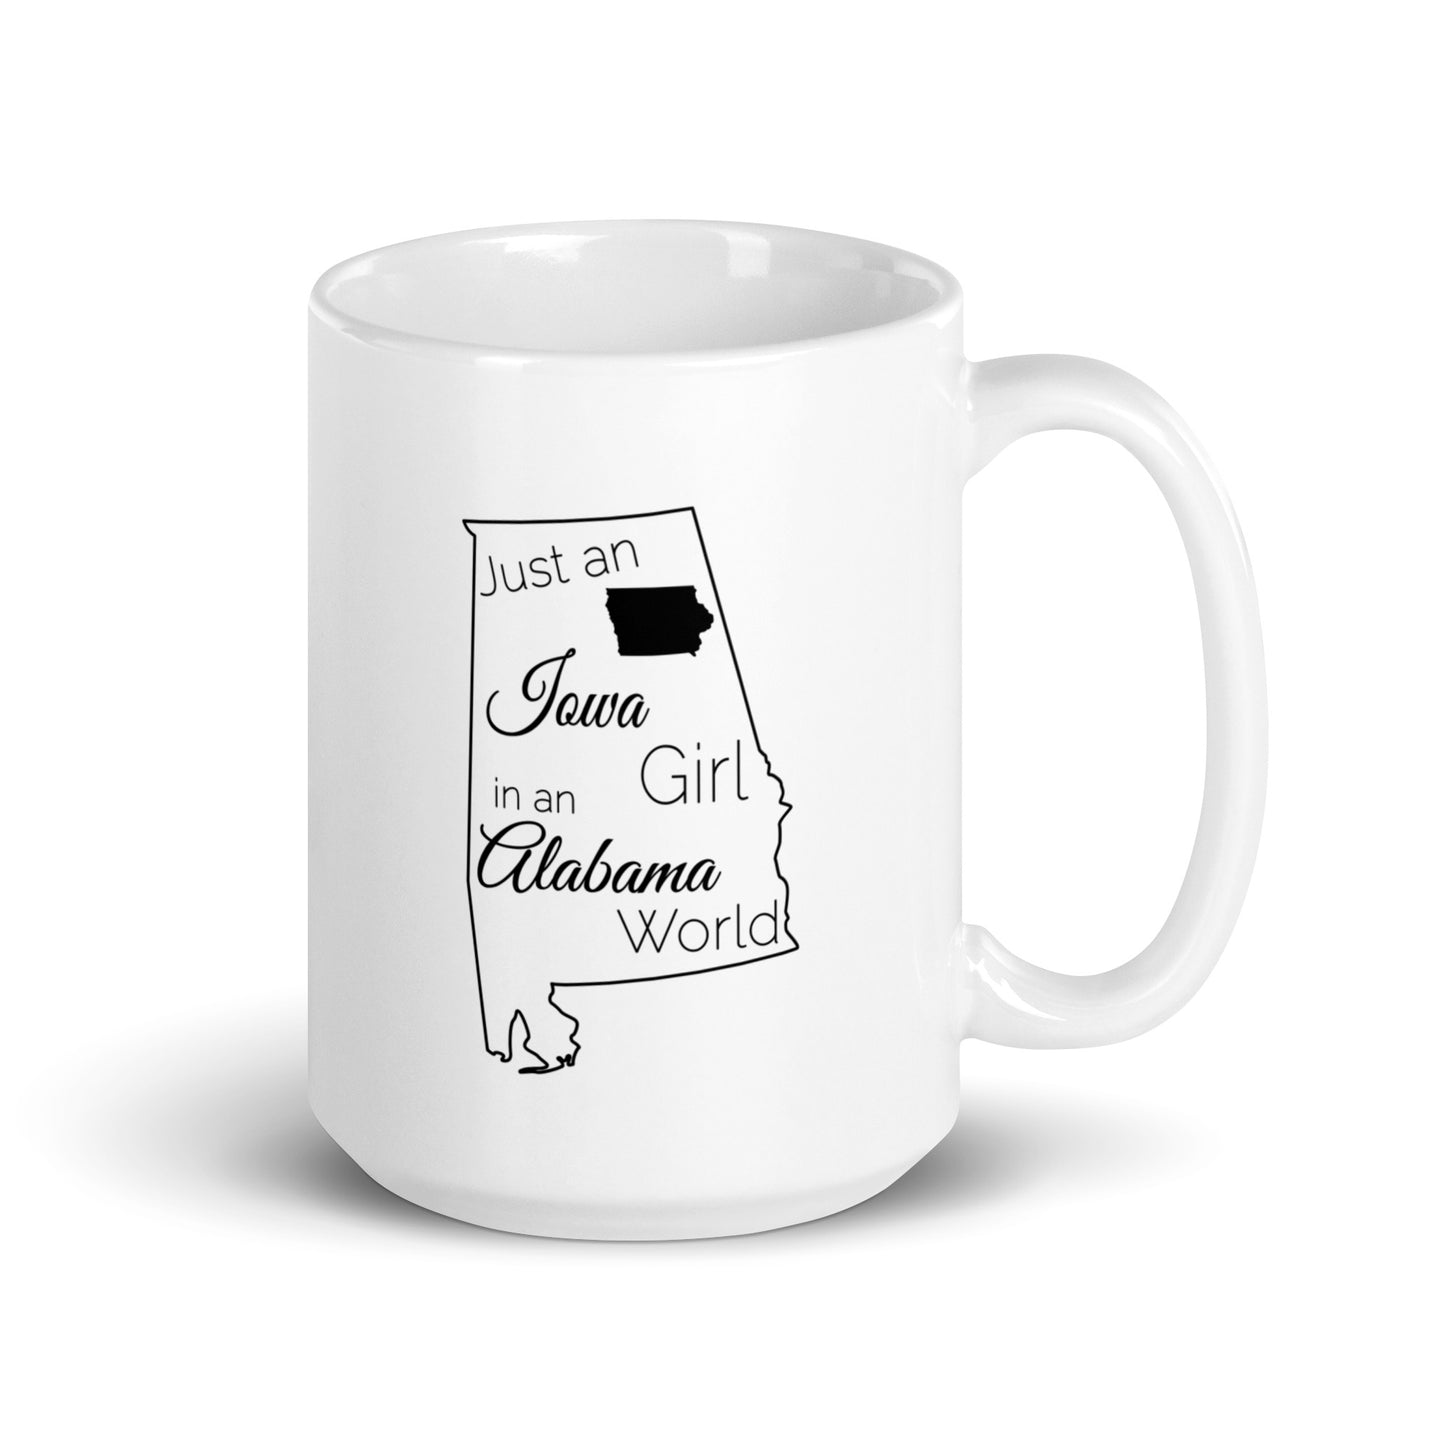 Just an Iowa Girl in an Alabama World White glossy mug